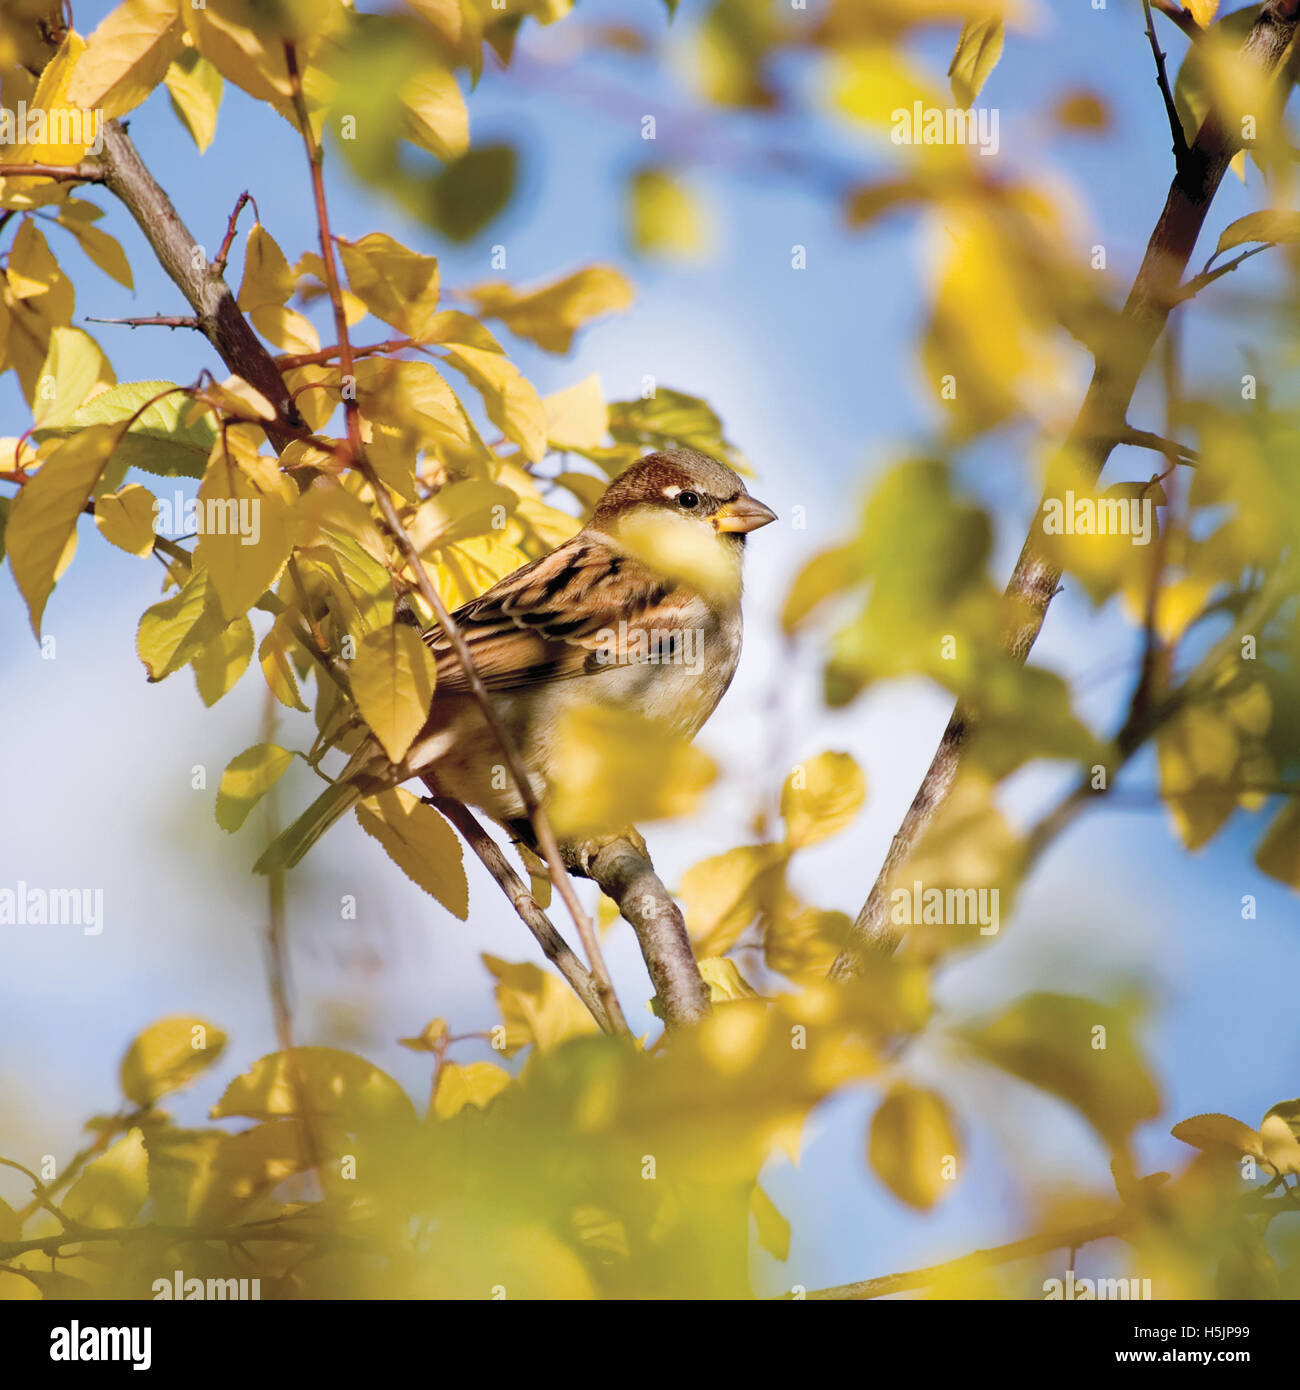 Spatz Vogel P. Passer Domesticus detaillierte Herbst Baum Versteck, gelbe Blätter, sonnigen blauen Himmel, Nahaufnahme, sanftes Bokeh Hintergrund Stockfoto